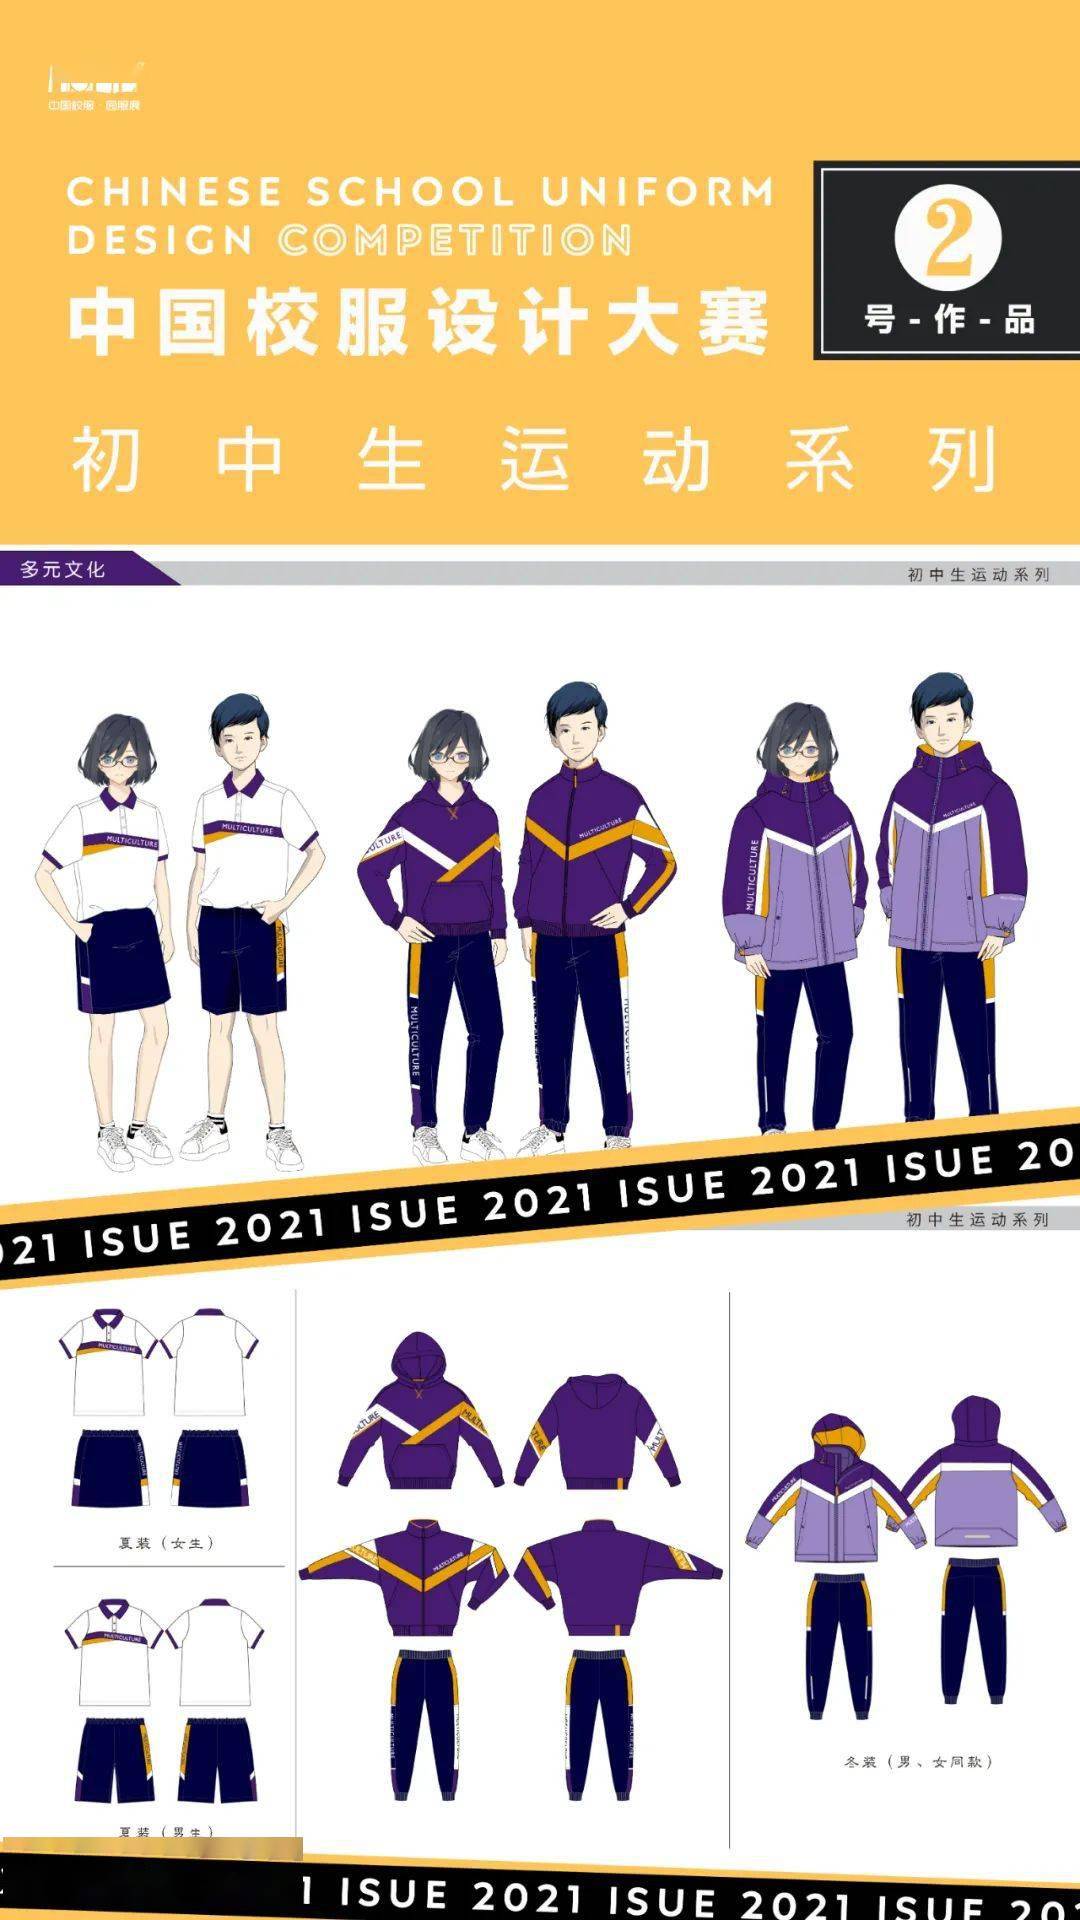 2021中国校服设计大赛各组别作品名单设计效果图发布